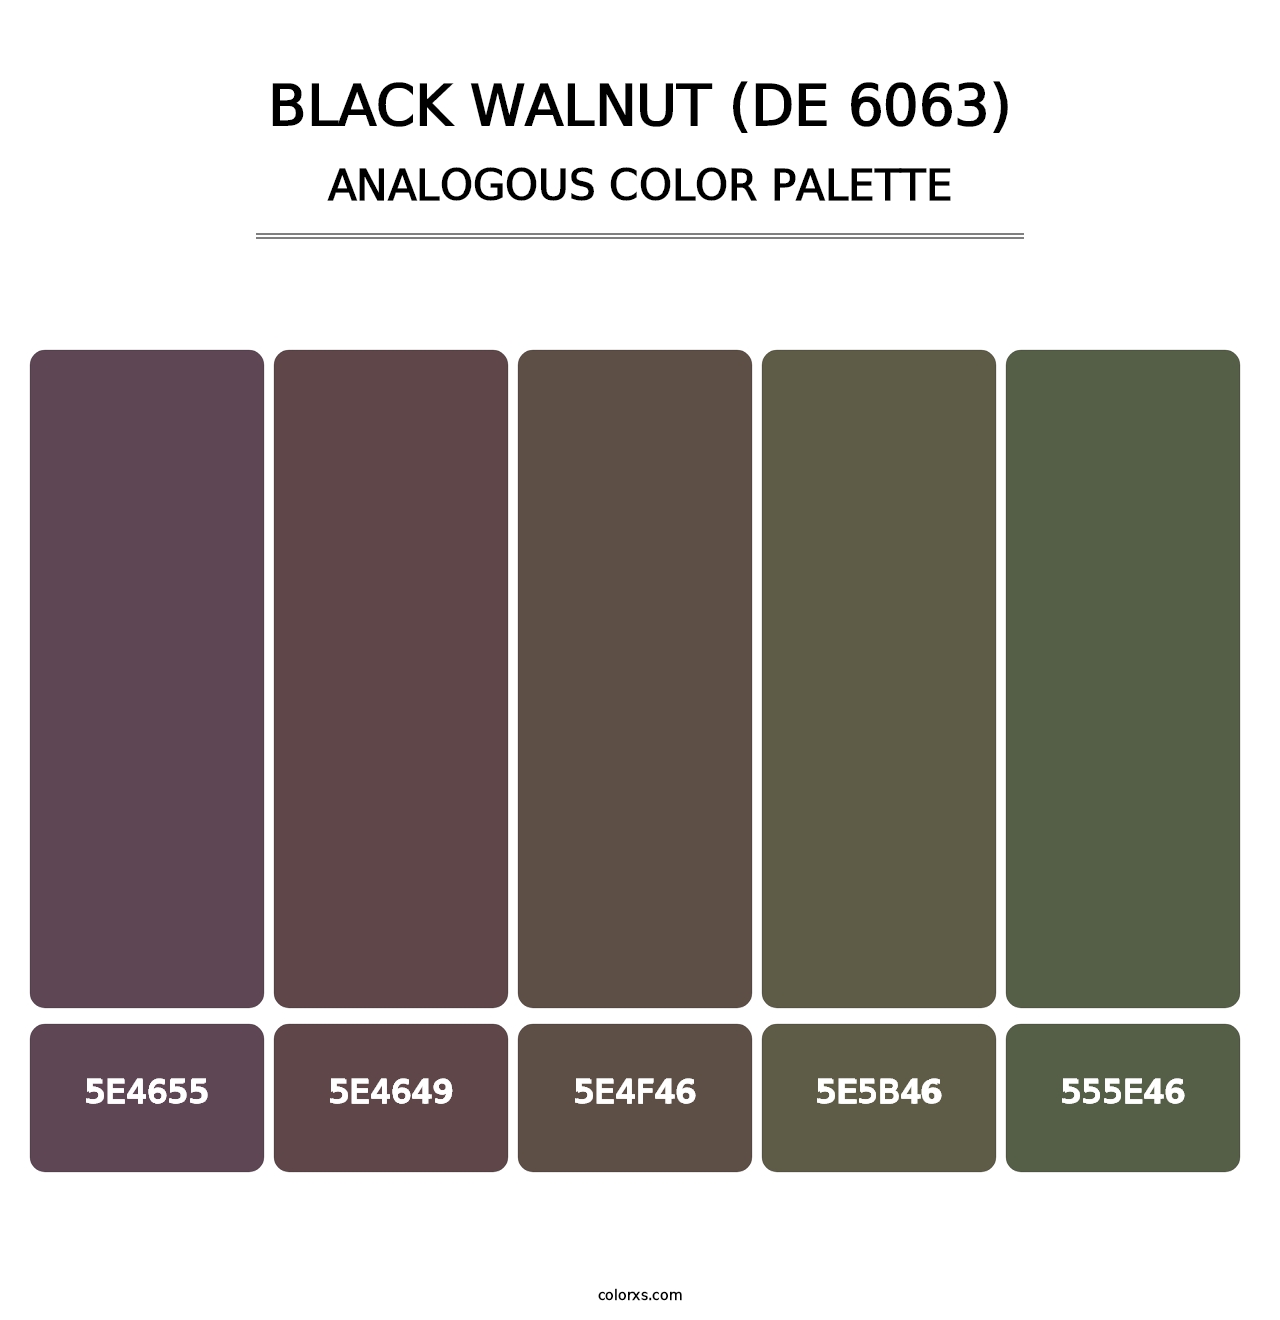 Black Walnut (DE 6063) - Analogous Color Palette